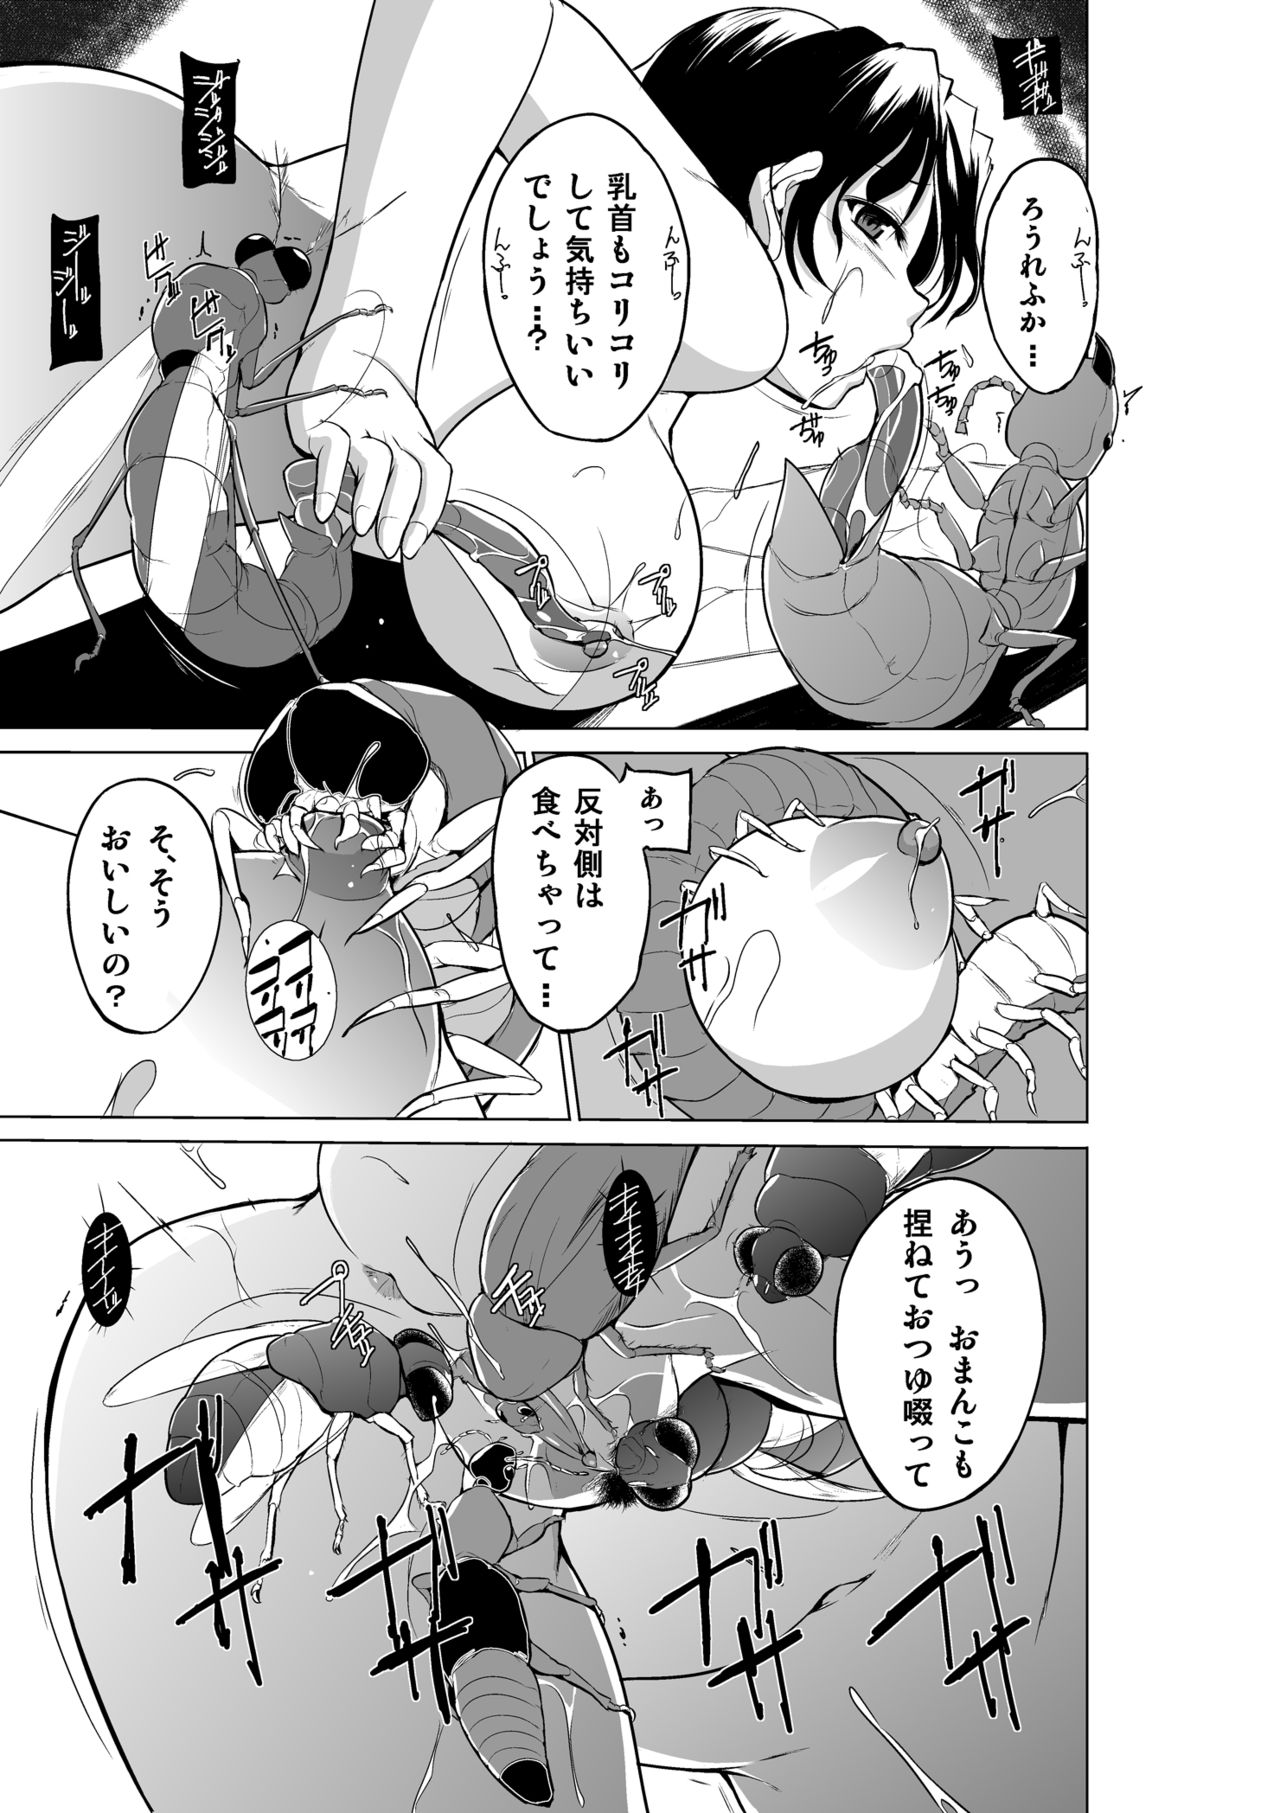 [TibaSanti (Misuke)] Dungeon Travelers - Haruka no Himegoto 2 (ToHeart2 Dungeon Travelers) [Digital] page 19 full